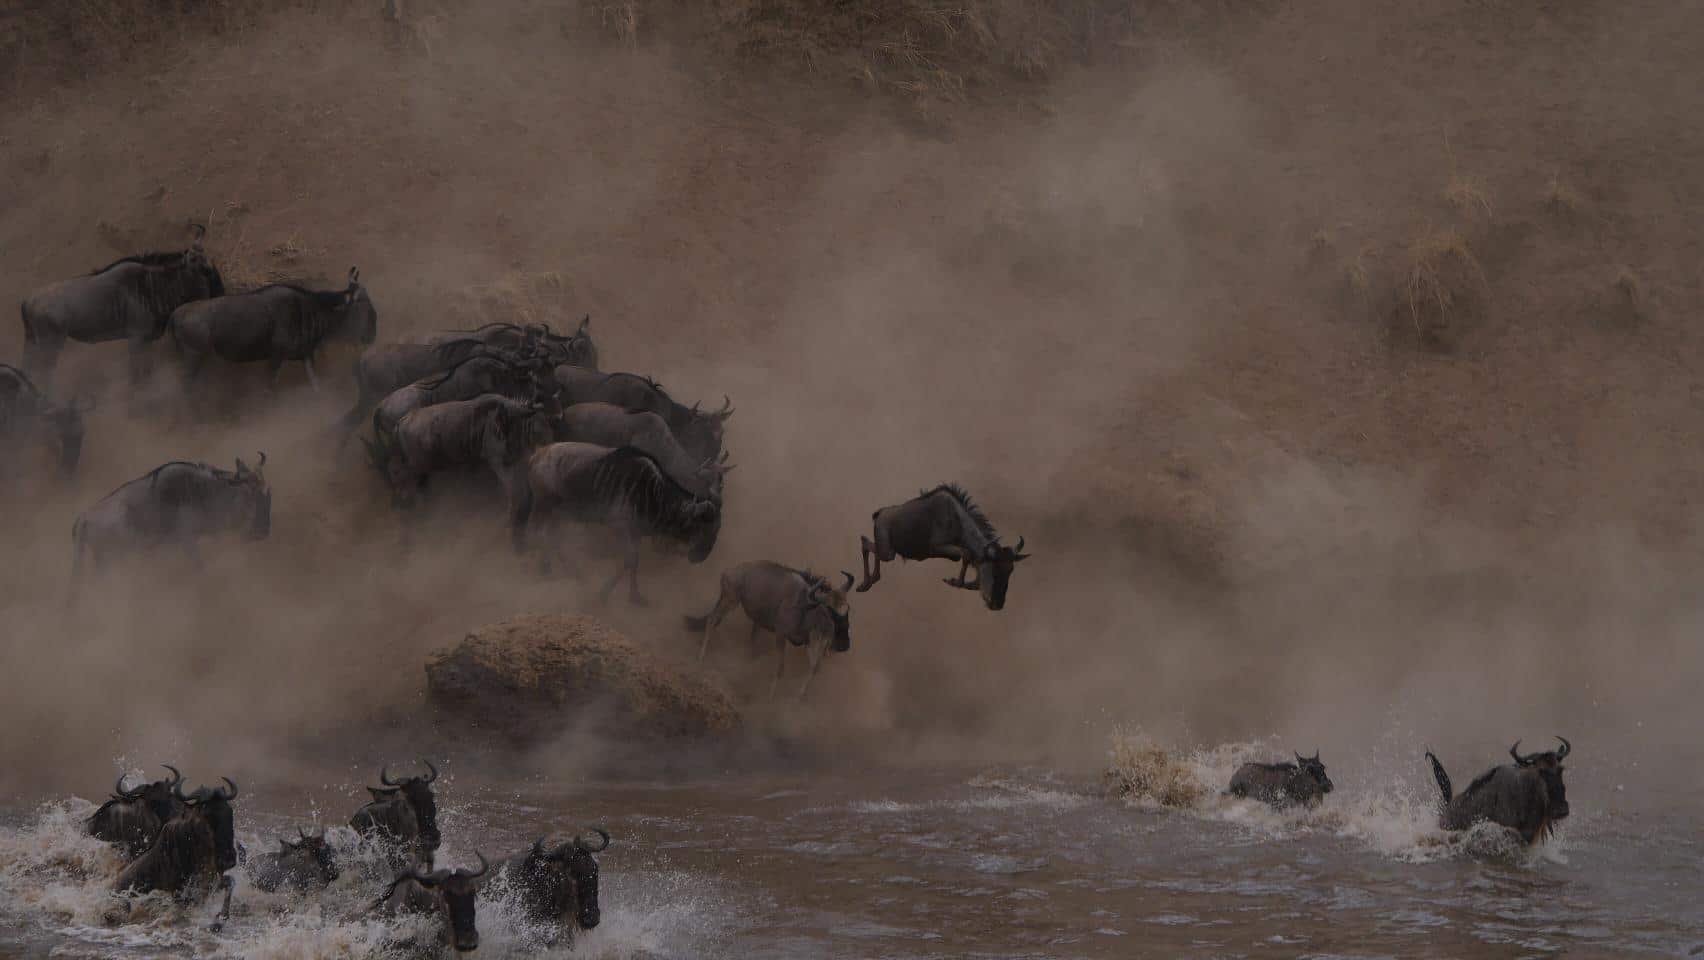 Springende en zwemmende wilde beast bij het oversteken van de rivier. Dit is het grootste spektakel tijden de migratie en te zien in Tanzania